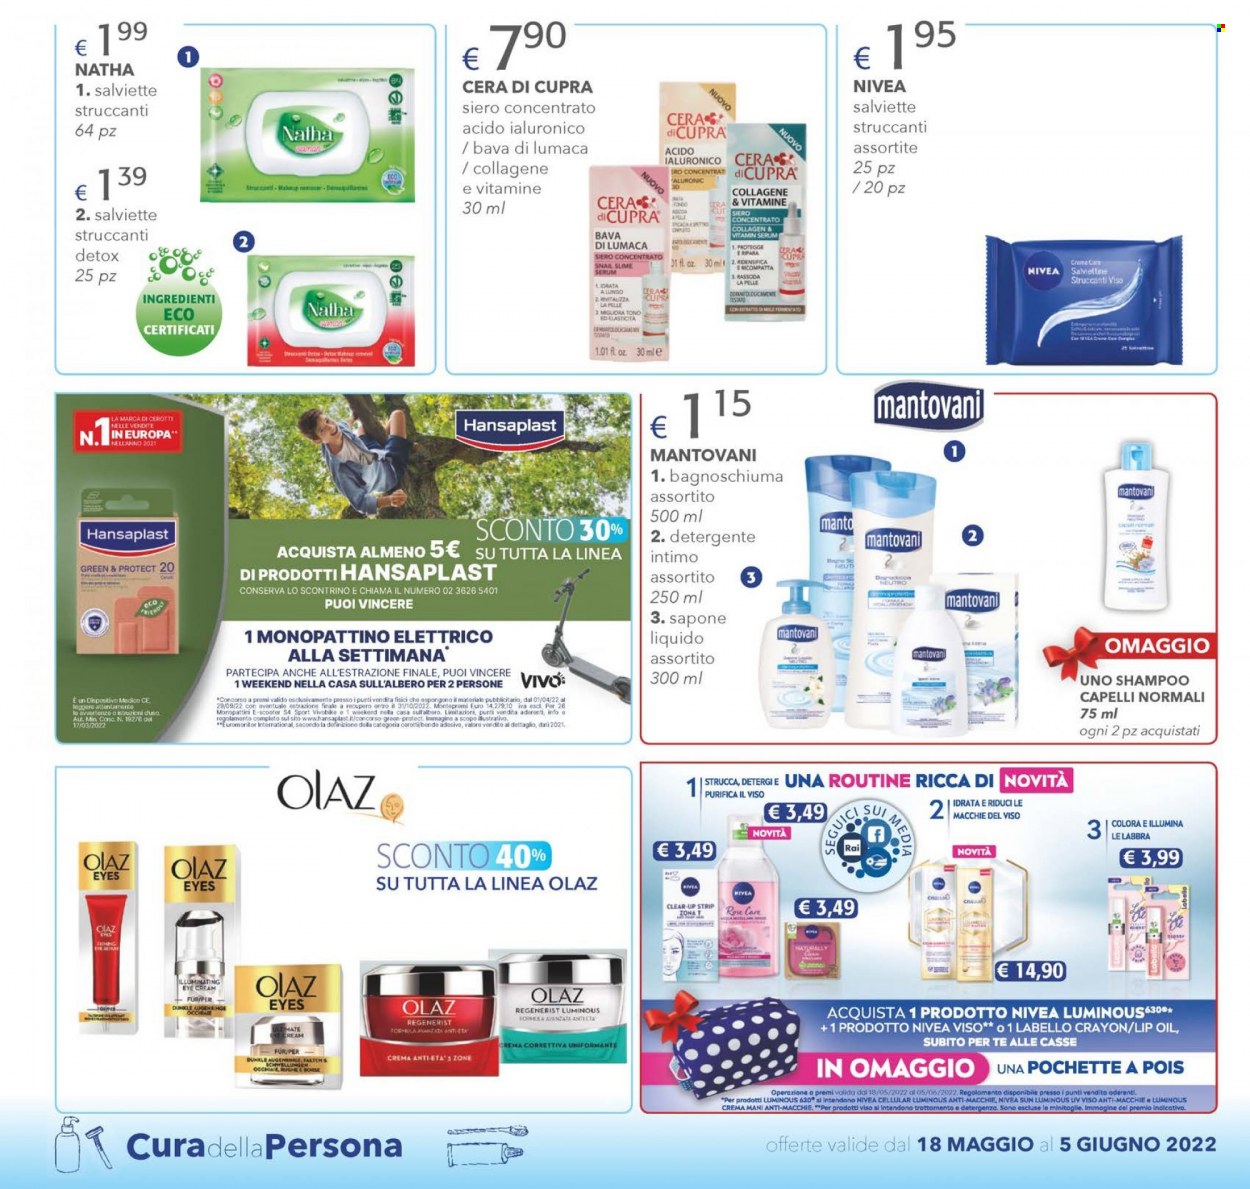 thumbnail - Volantino Acqua & Sapone - 18/5/2022 - 5/6/2022 - Prodotti in offerta - Nivea, detergente, sapone, sapone liquido, bagnoschiuma, Olaz, Labello, shampoo, crema mani. Pagina 18.